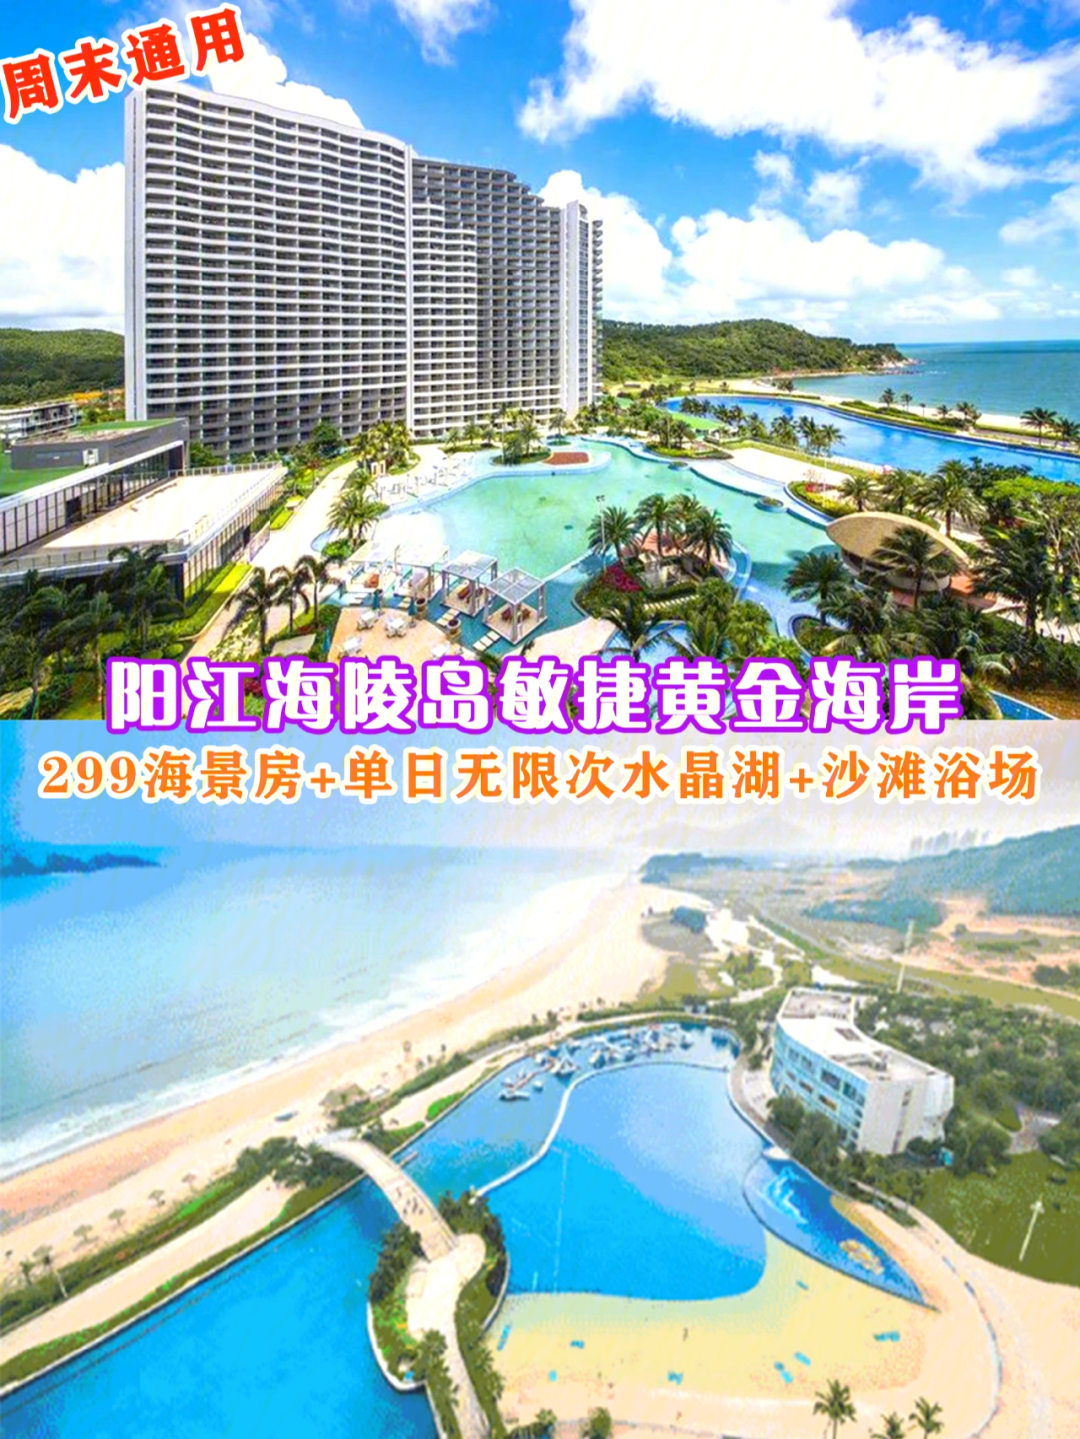 阳江海陵岛299住海景房畅水晶湖沙滩浴场